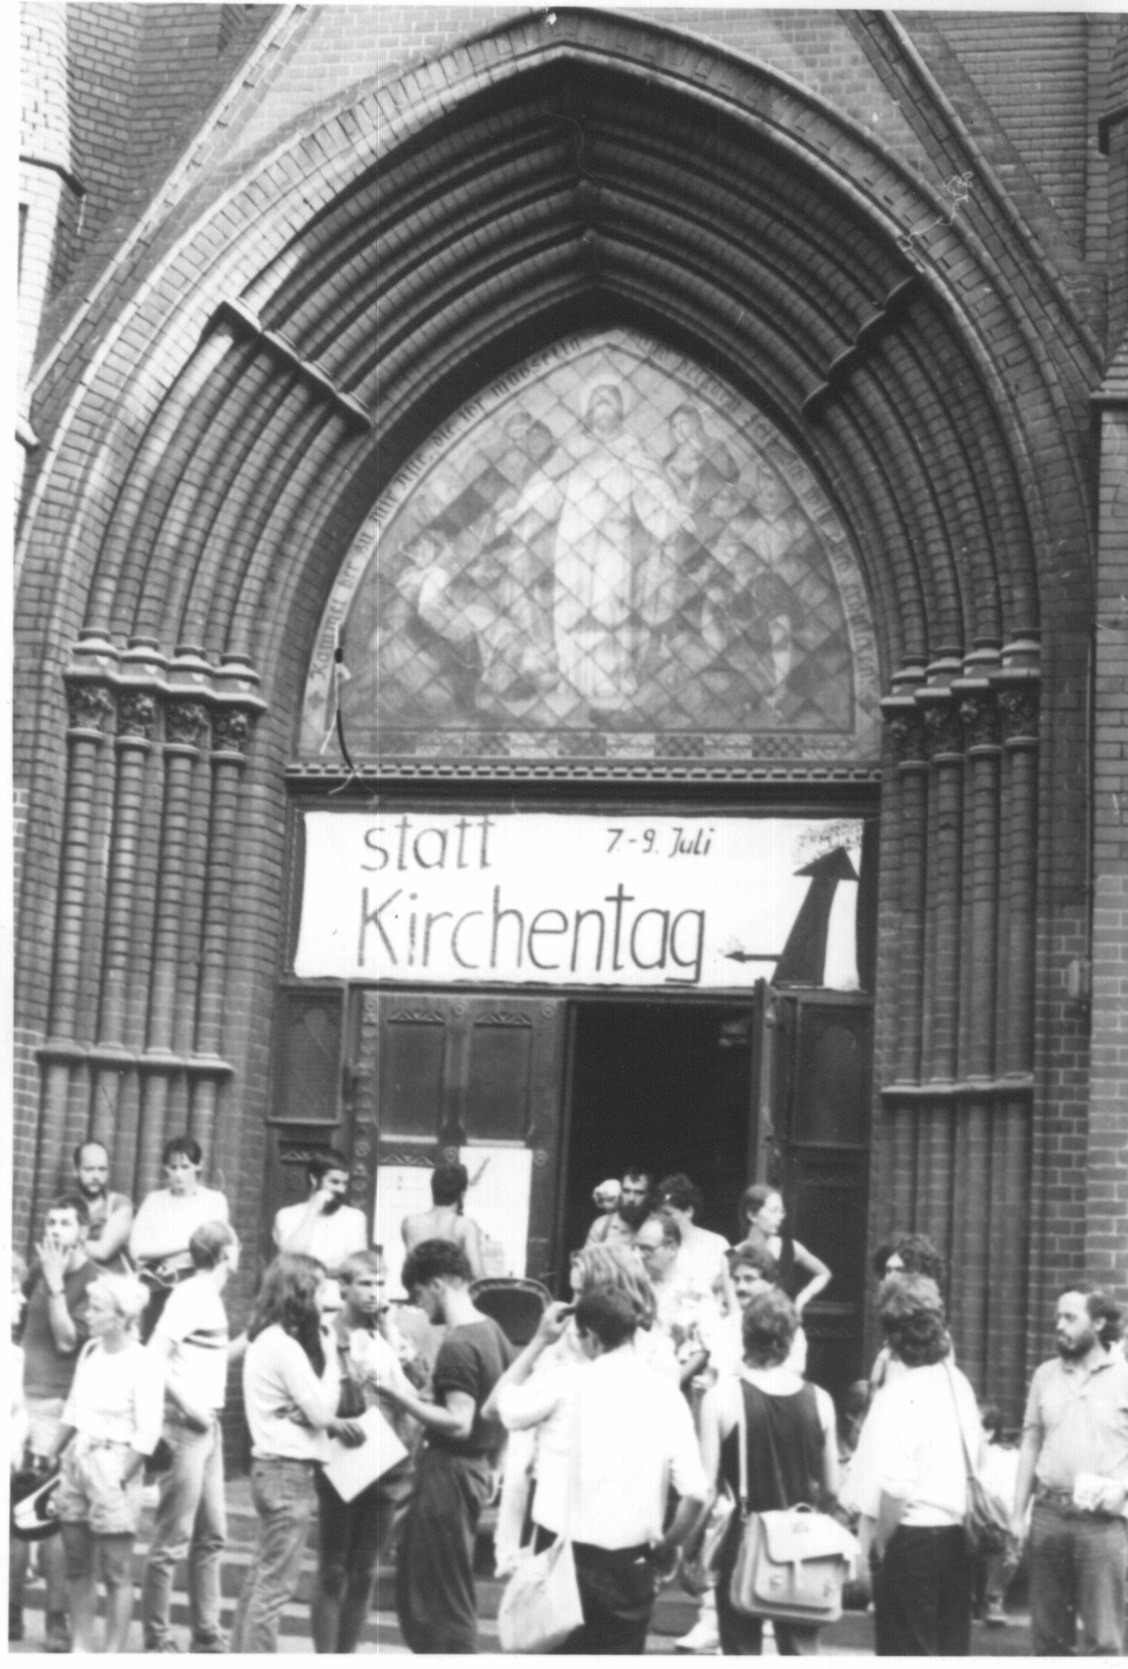 Statt-Kirchentag in Leipzig im Juli 1989 in der Lukaskirche